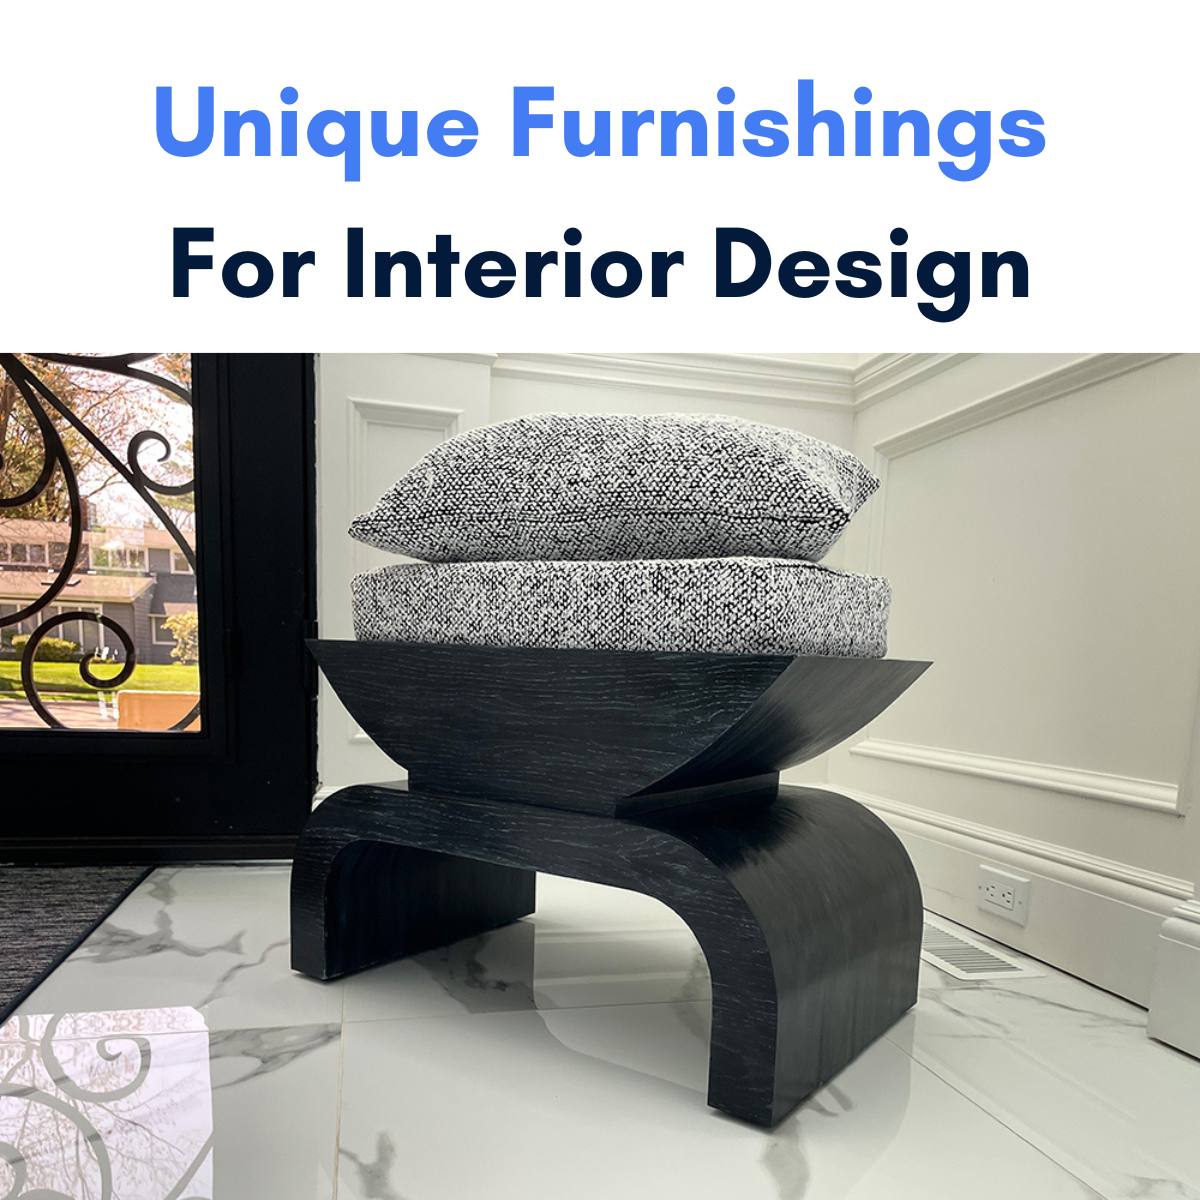 Unique Furnishings for interior design